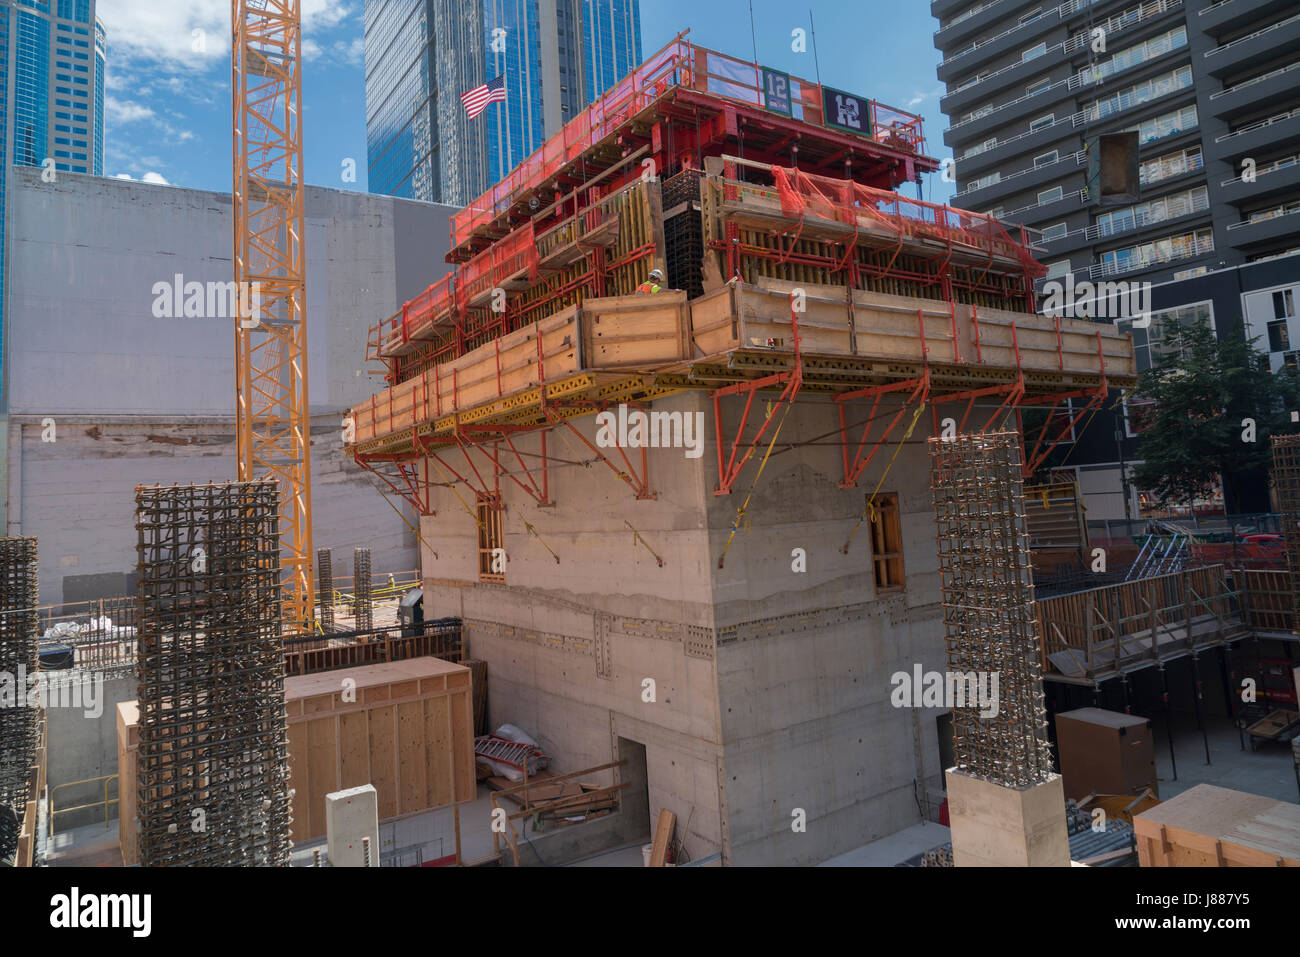 Stati Uniti, Washington, Seattle, della costruzione della 2a Avenue & Pike Street Foto Stock